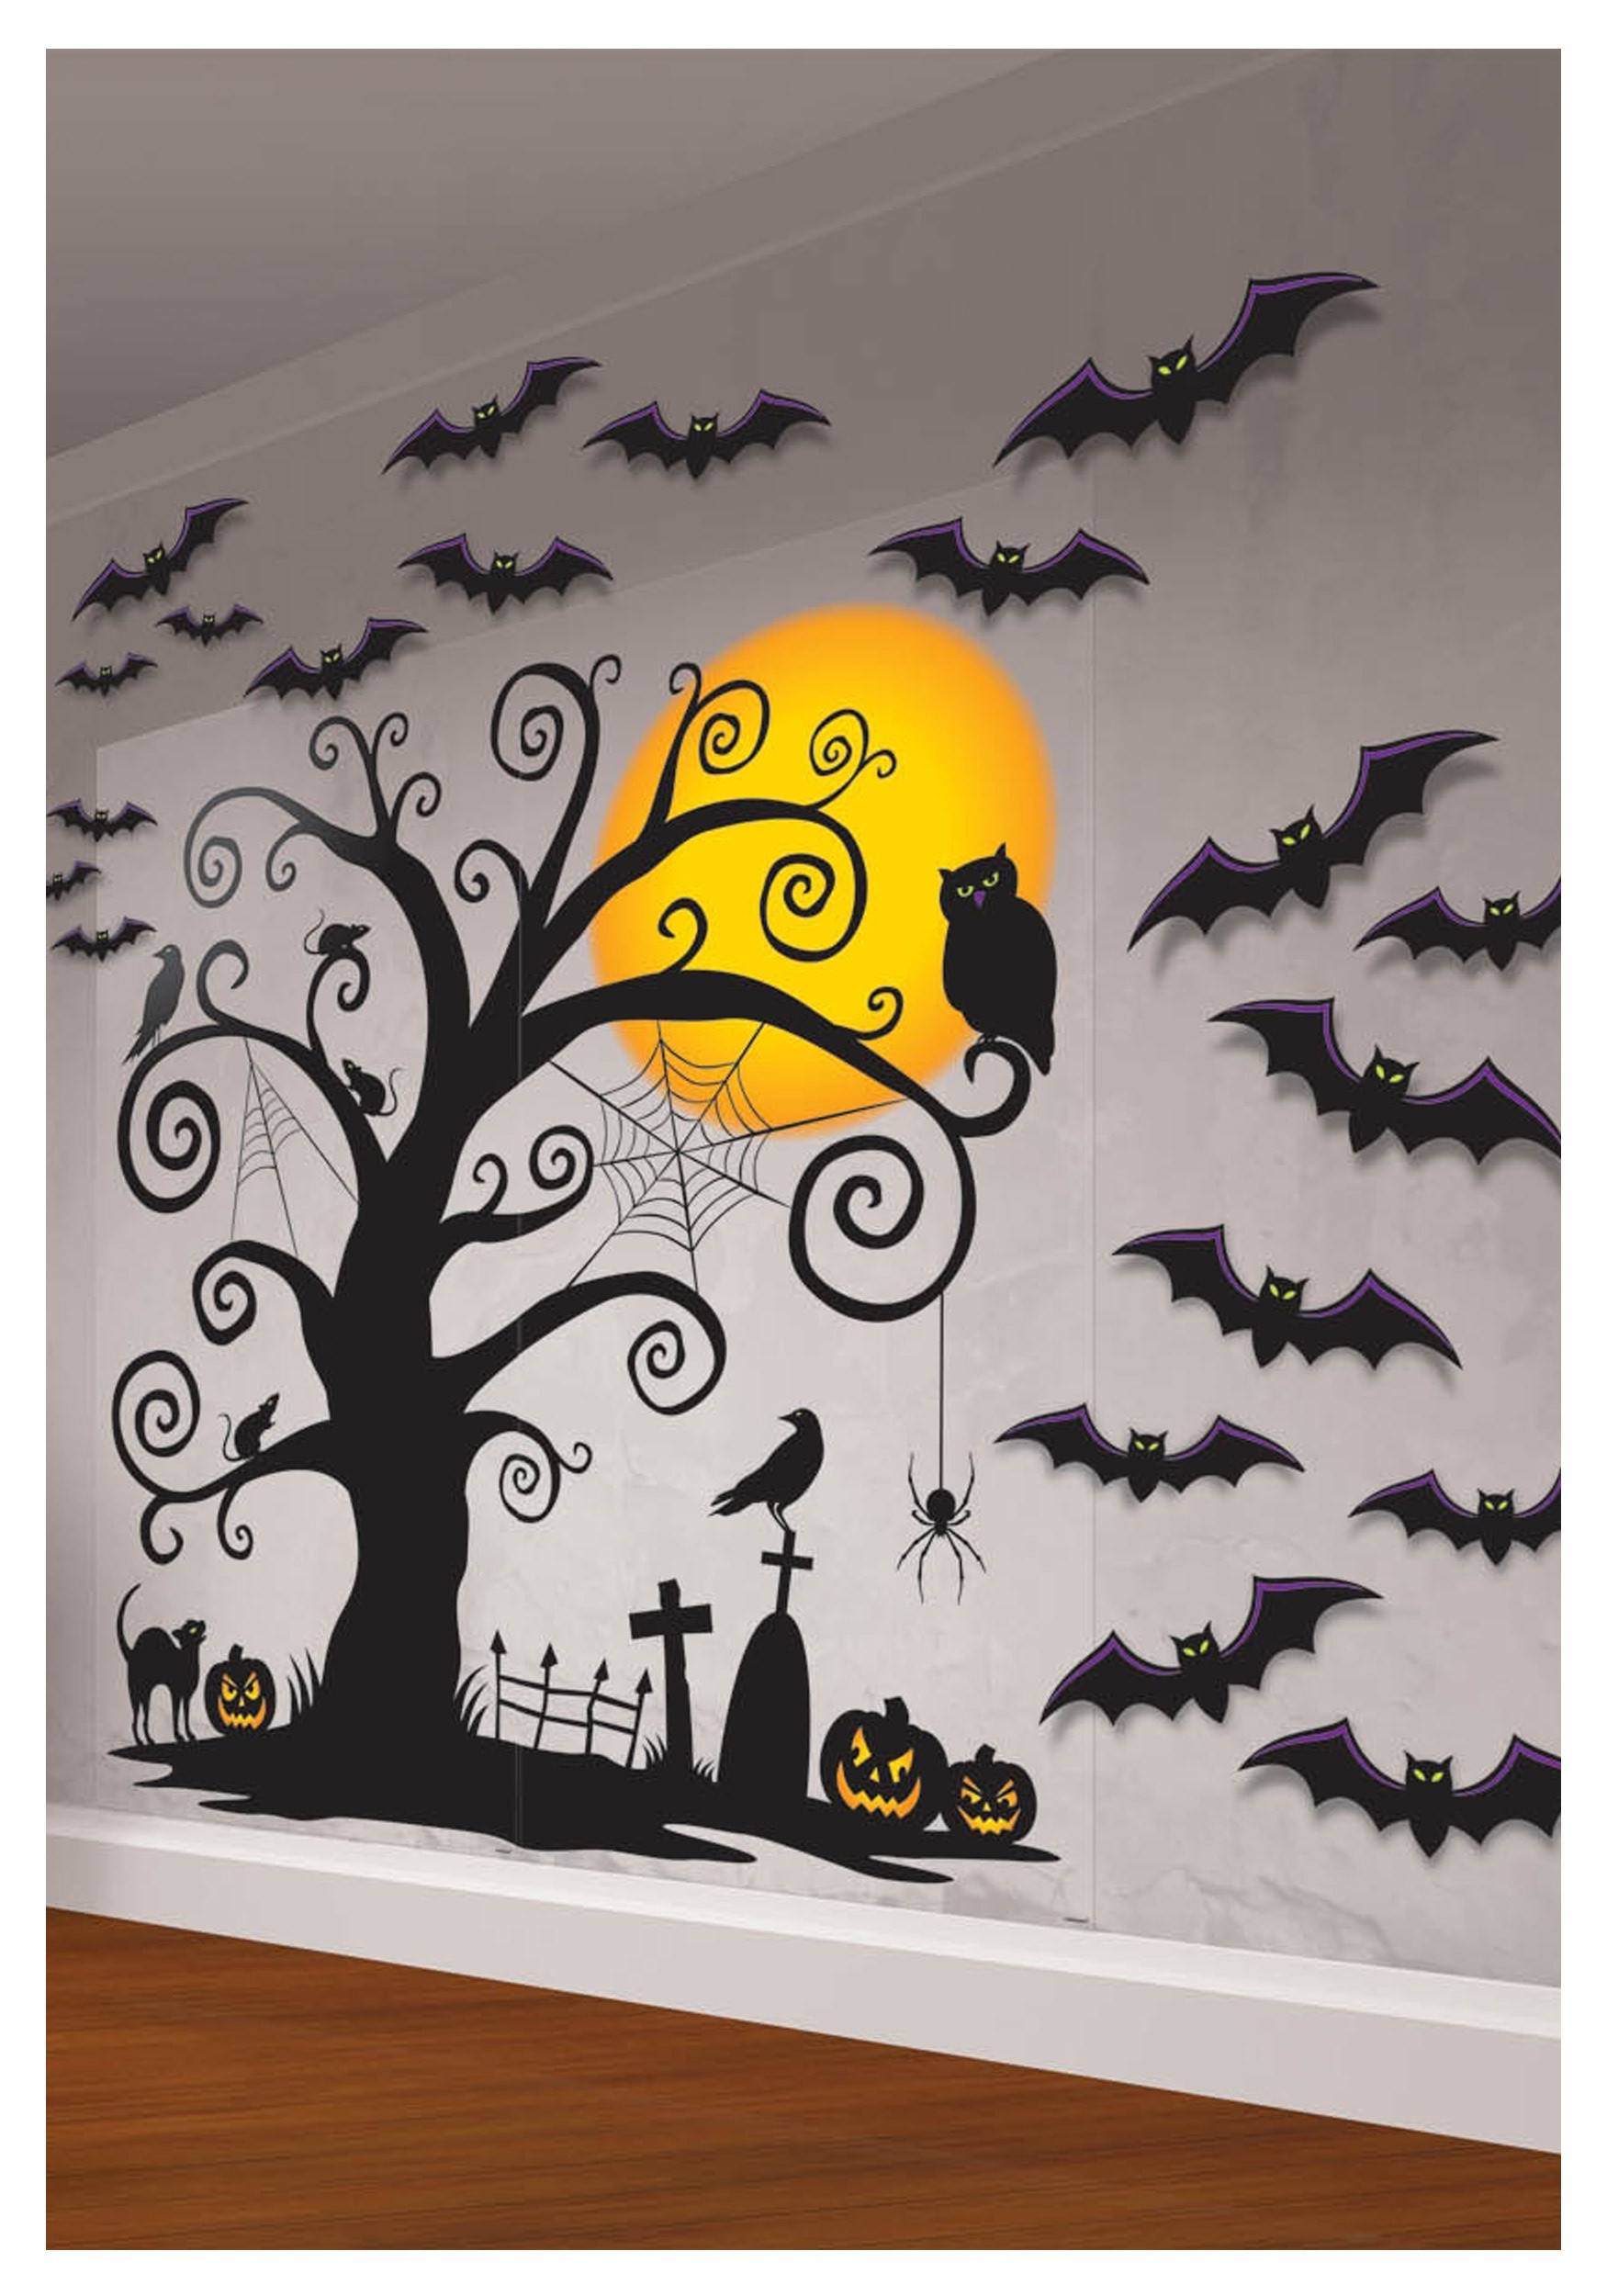 Halloween Wall Decor
 CREATIVE HANDMADE INDOOR HALLOWEEN DECORATIONS